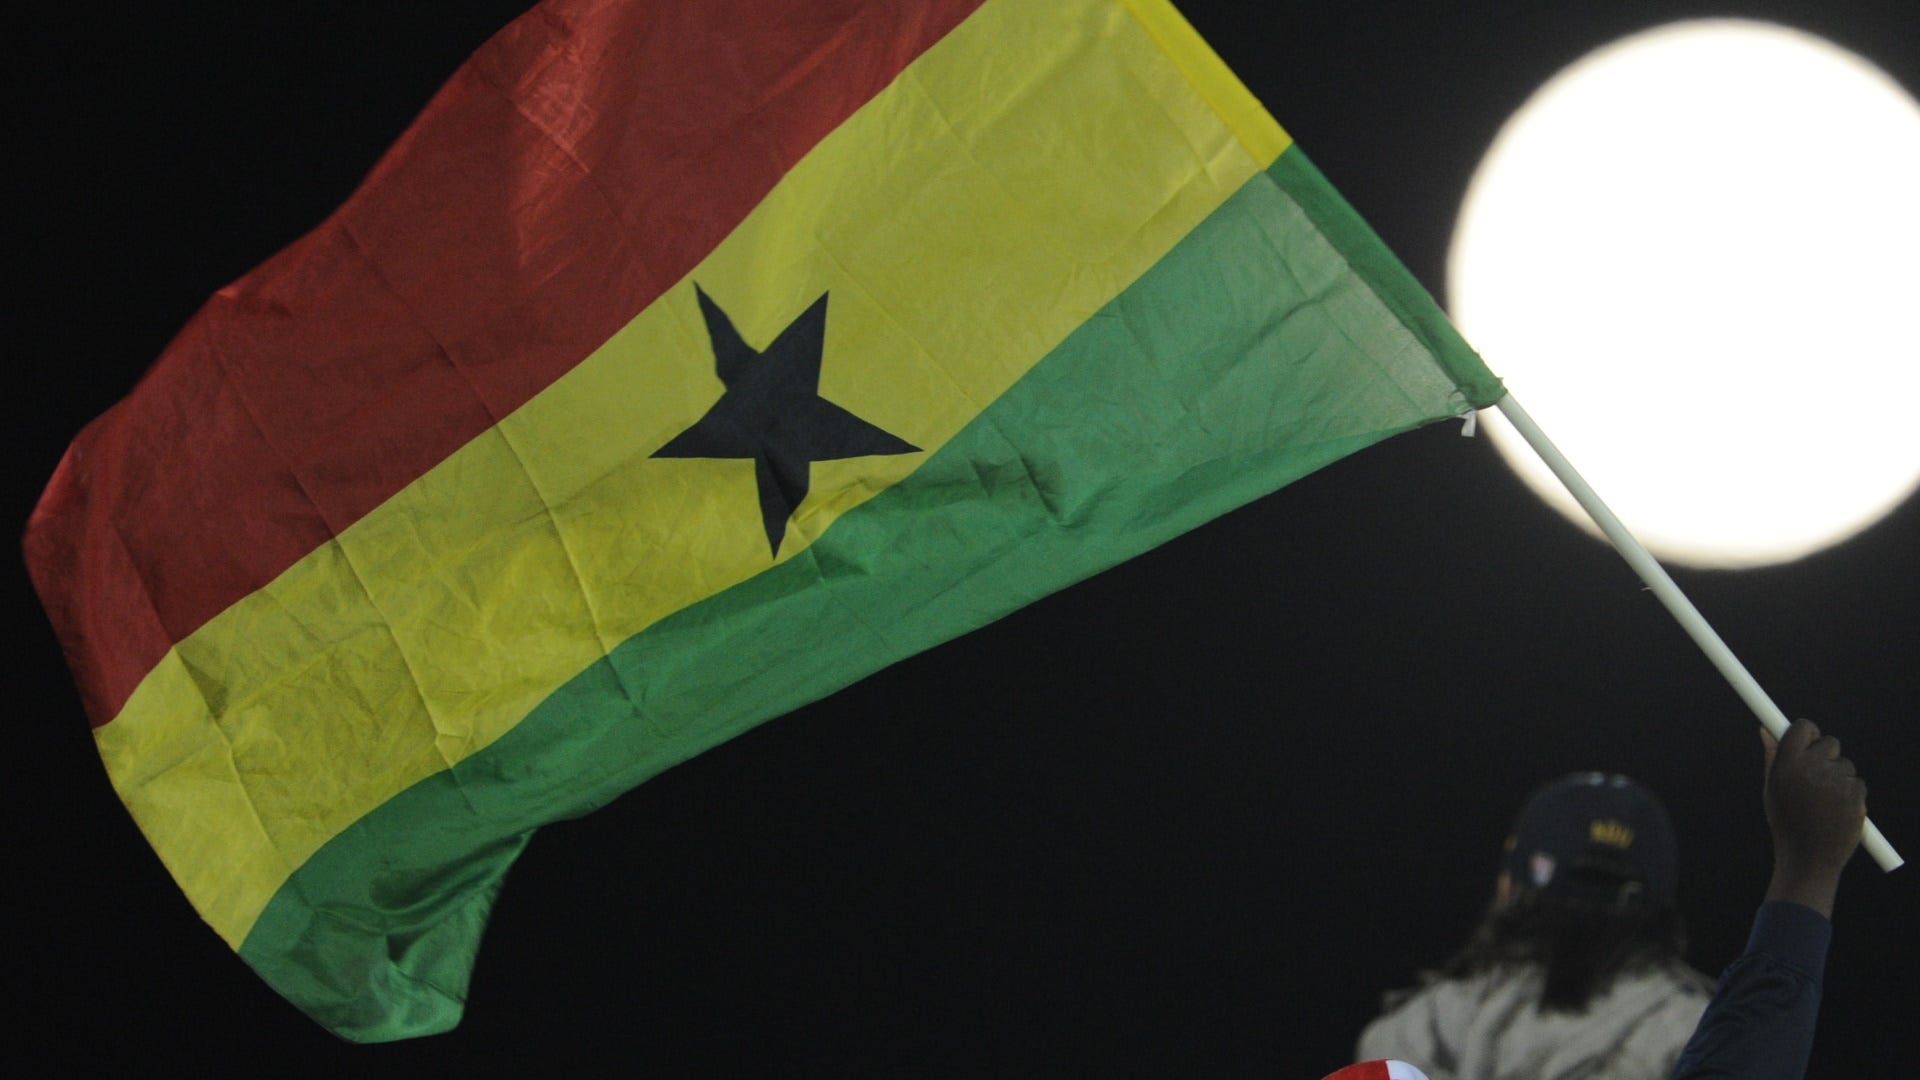 Cầu thủ Ghana: Hãy đến và xem những khoảnh khắc nghẹt thở của những cầu thủ Ghana tại giải đấu danh giá này. Cùng theo dõi sức mạnh và sự xuất sắc của họ trong mỗi trận đấu.